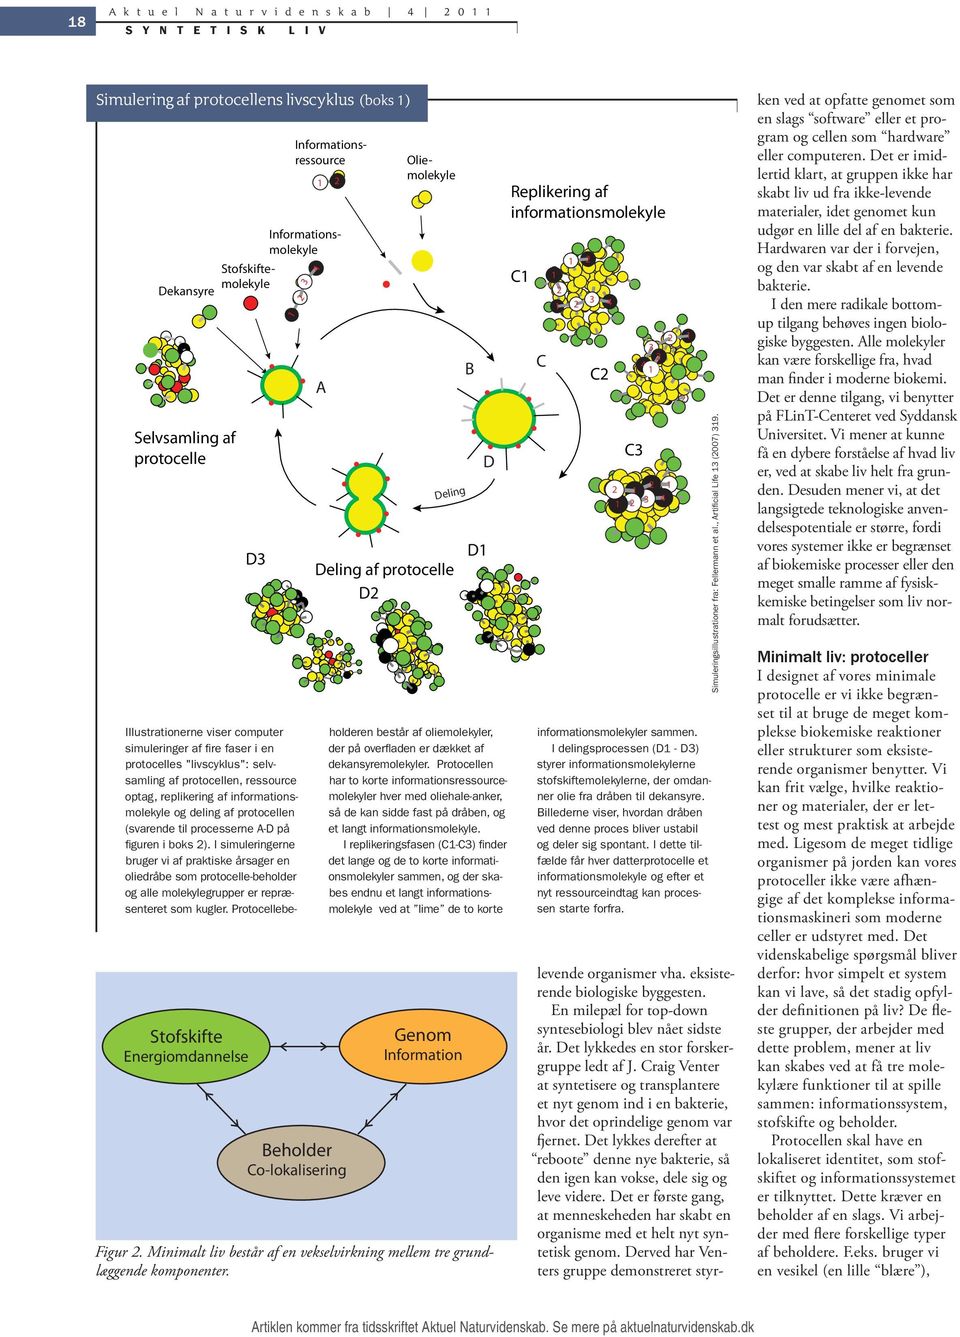 "livscyklus": selvsamling af protocellen, ressource optag, replikering af informationsmolekyle og deling af protocellen (svarende til processerne A-D på figuren i boks ).